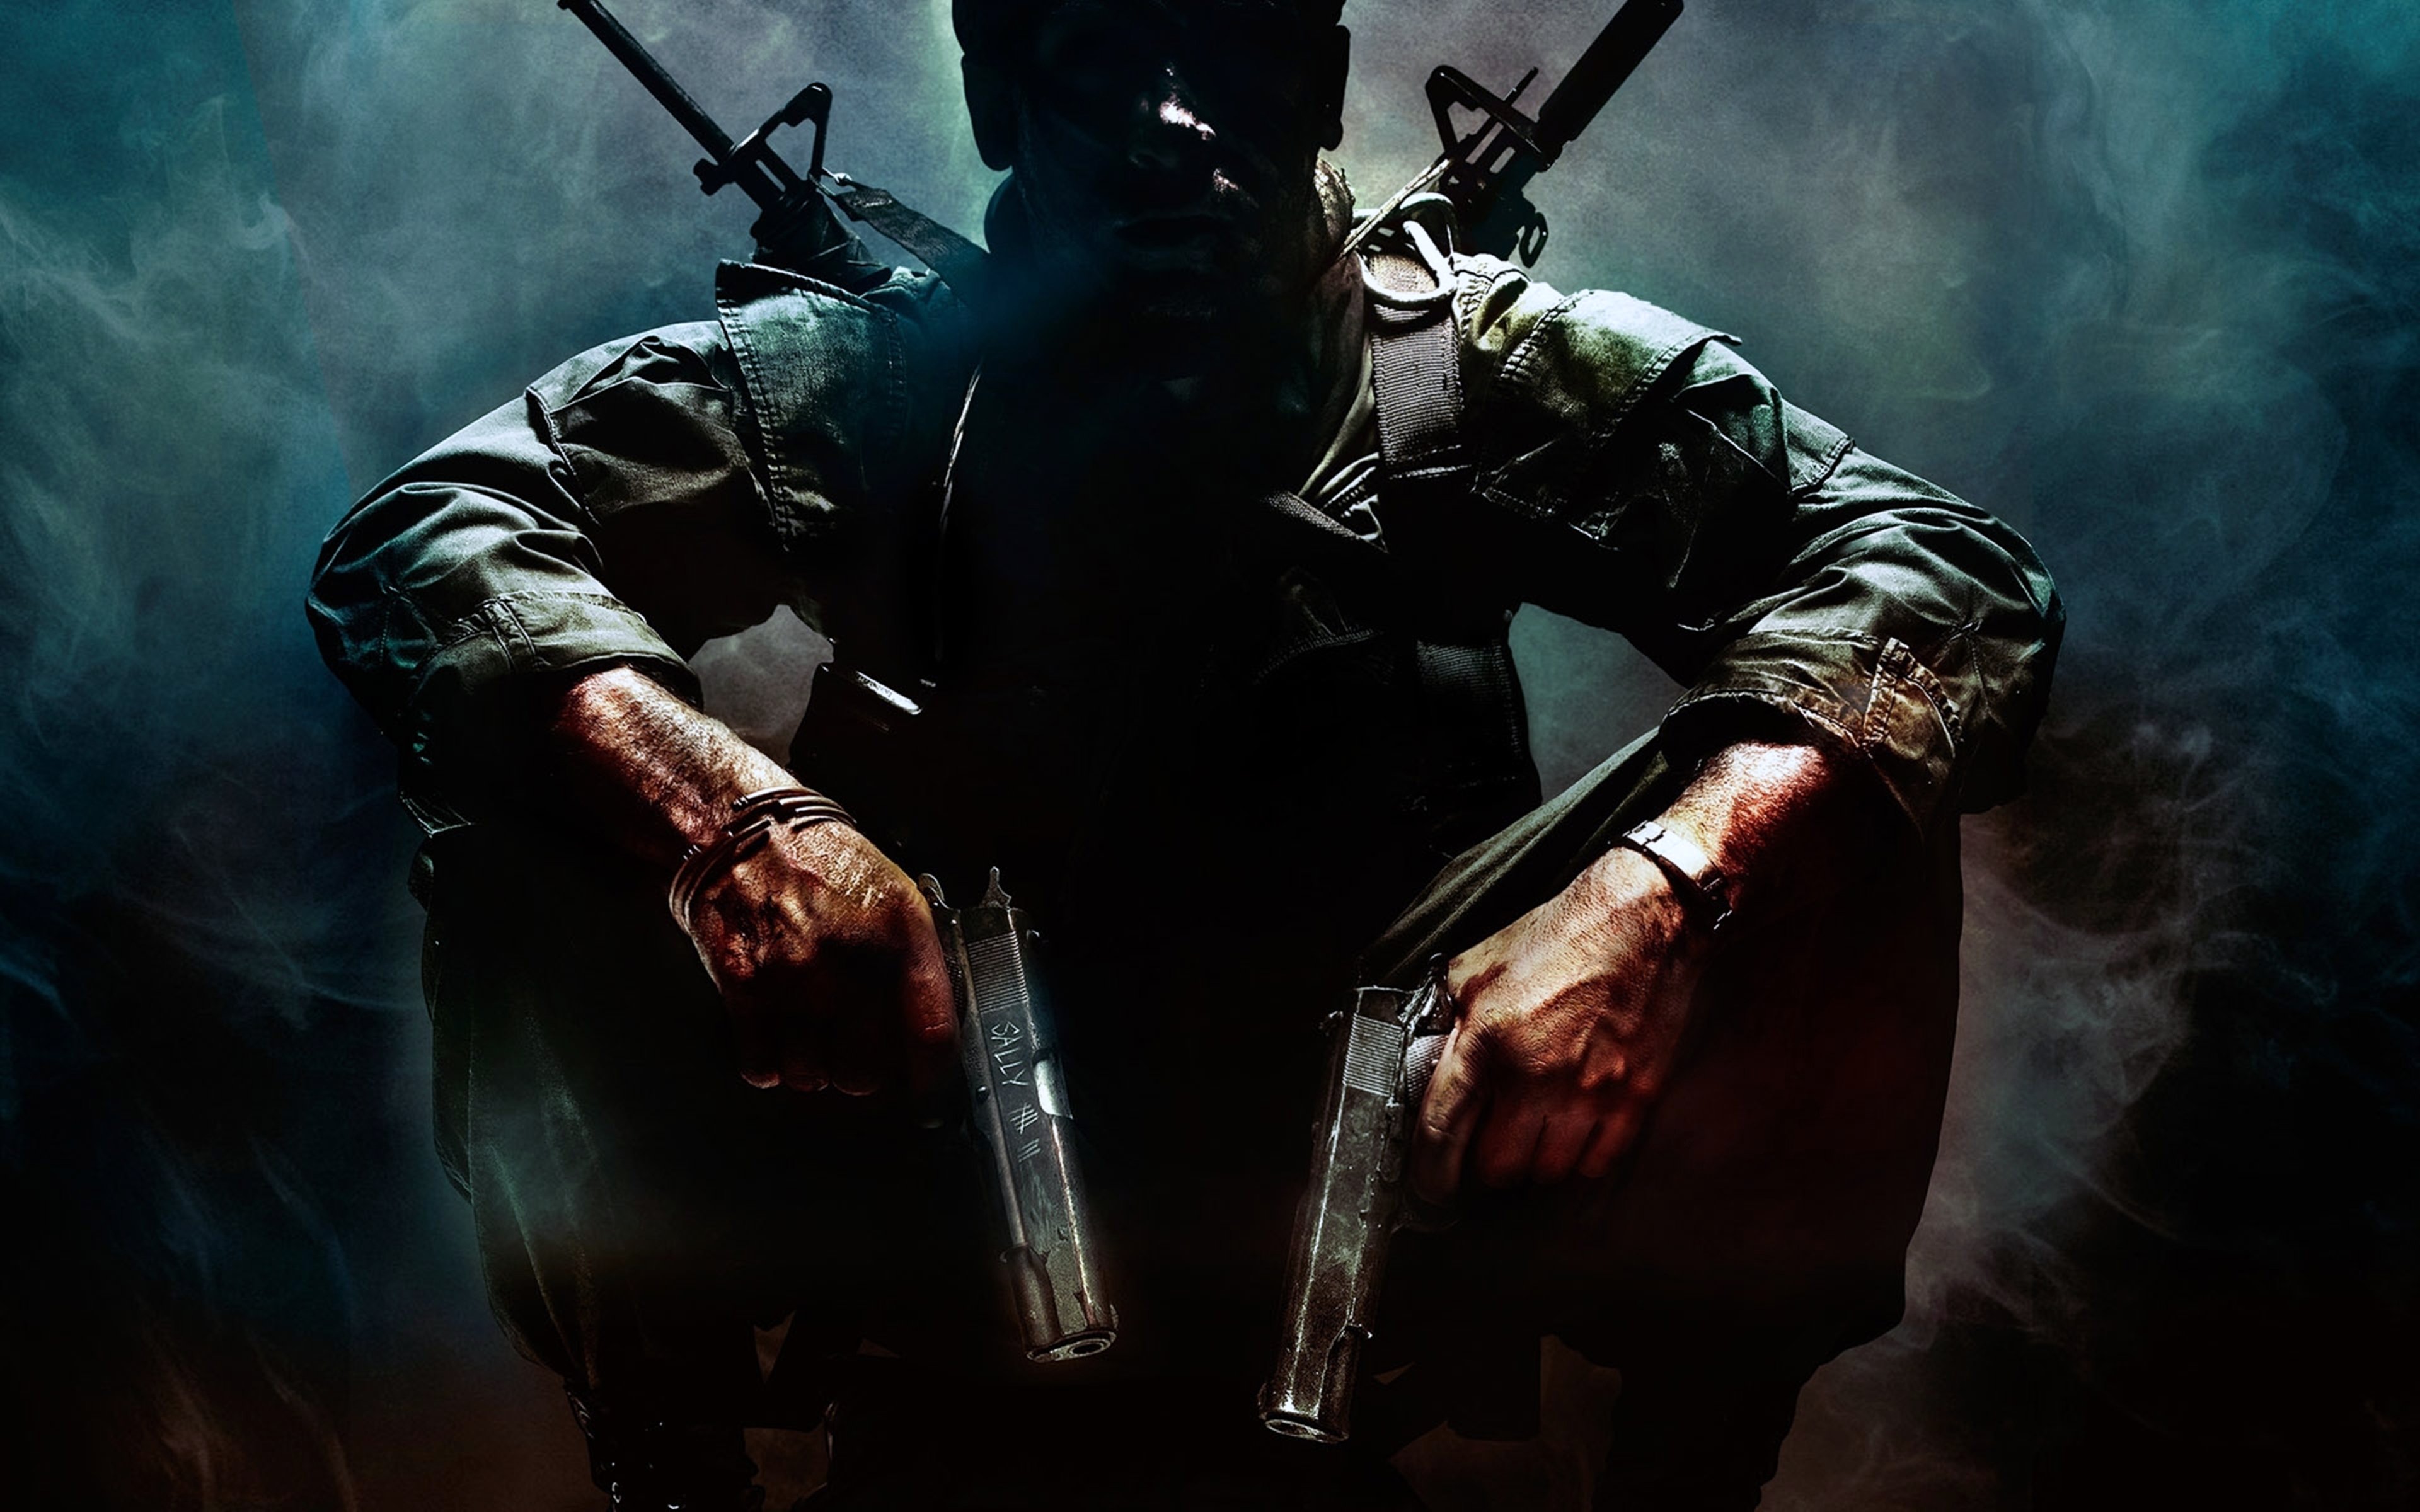 military, Soldier, Fighter, Pistols, Struggle, Valor, Gangs, War, Guns Wallpaper HD / Desktop and Mobile Background